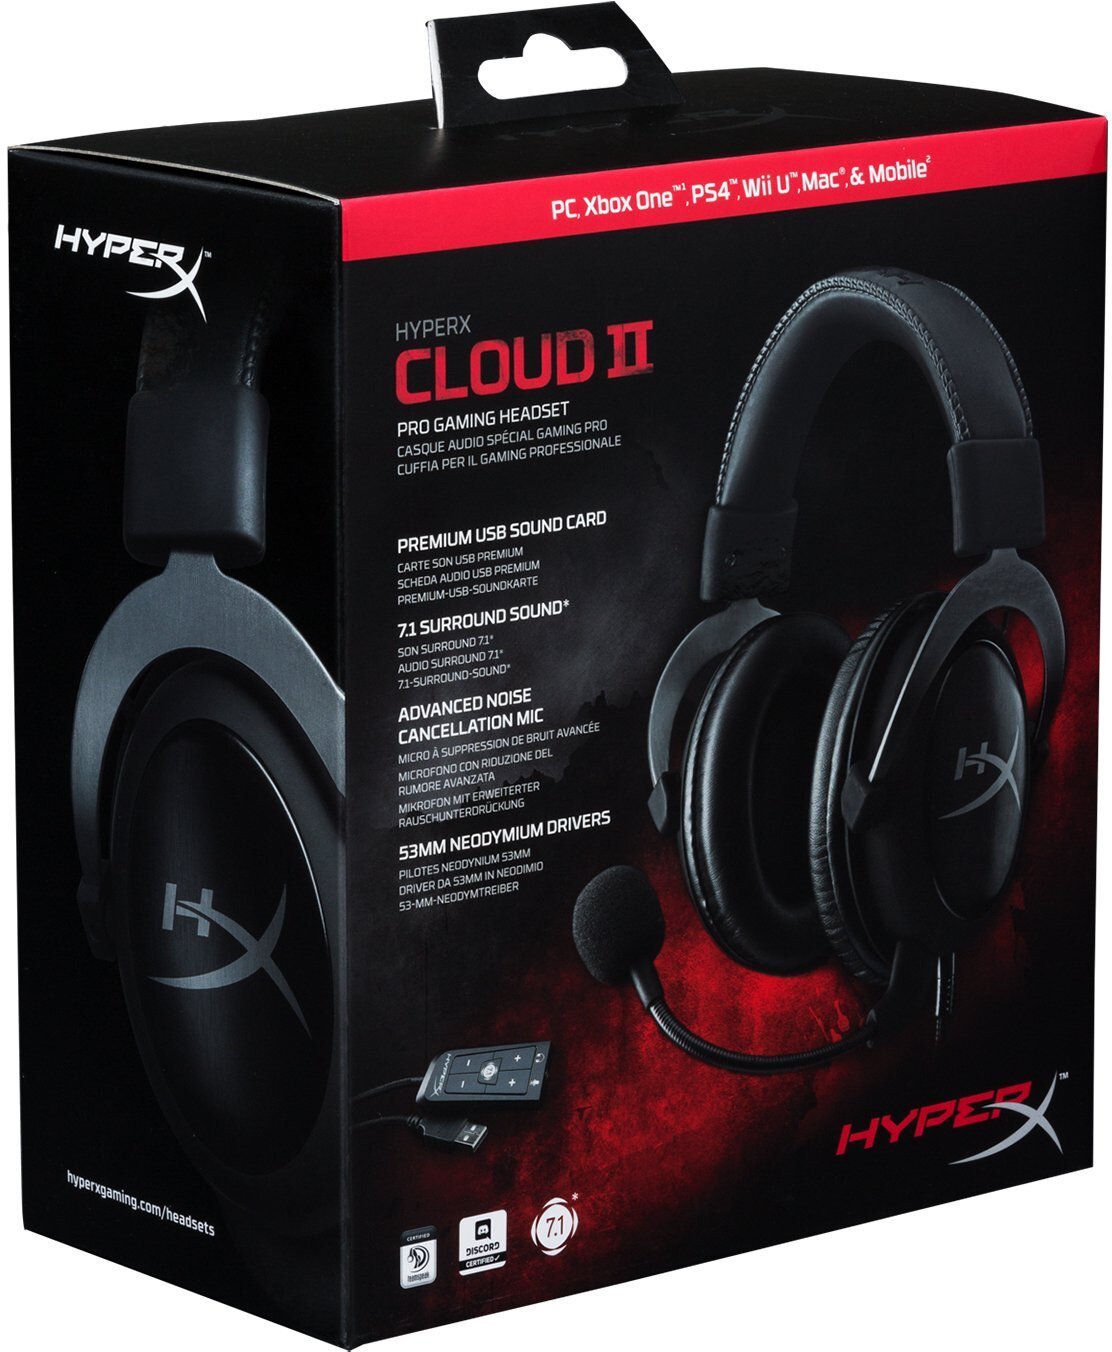 Buy HyperX Cloud II Wired Gaming Headset online in Pakistan - Tejar.pk